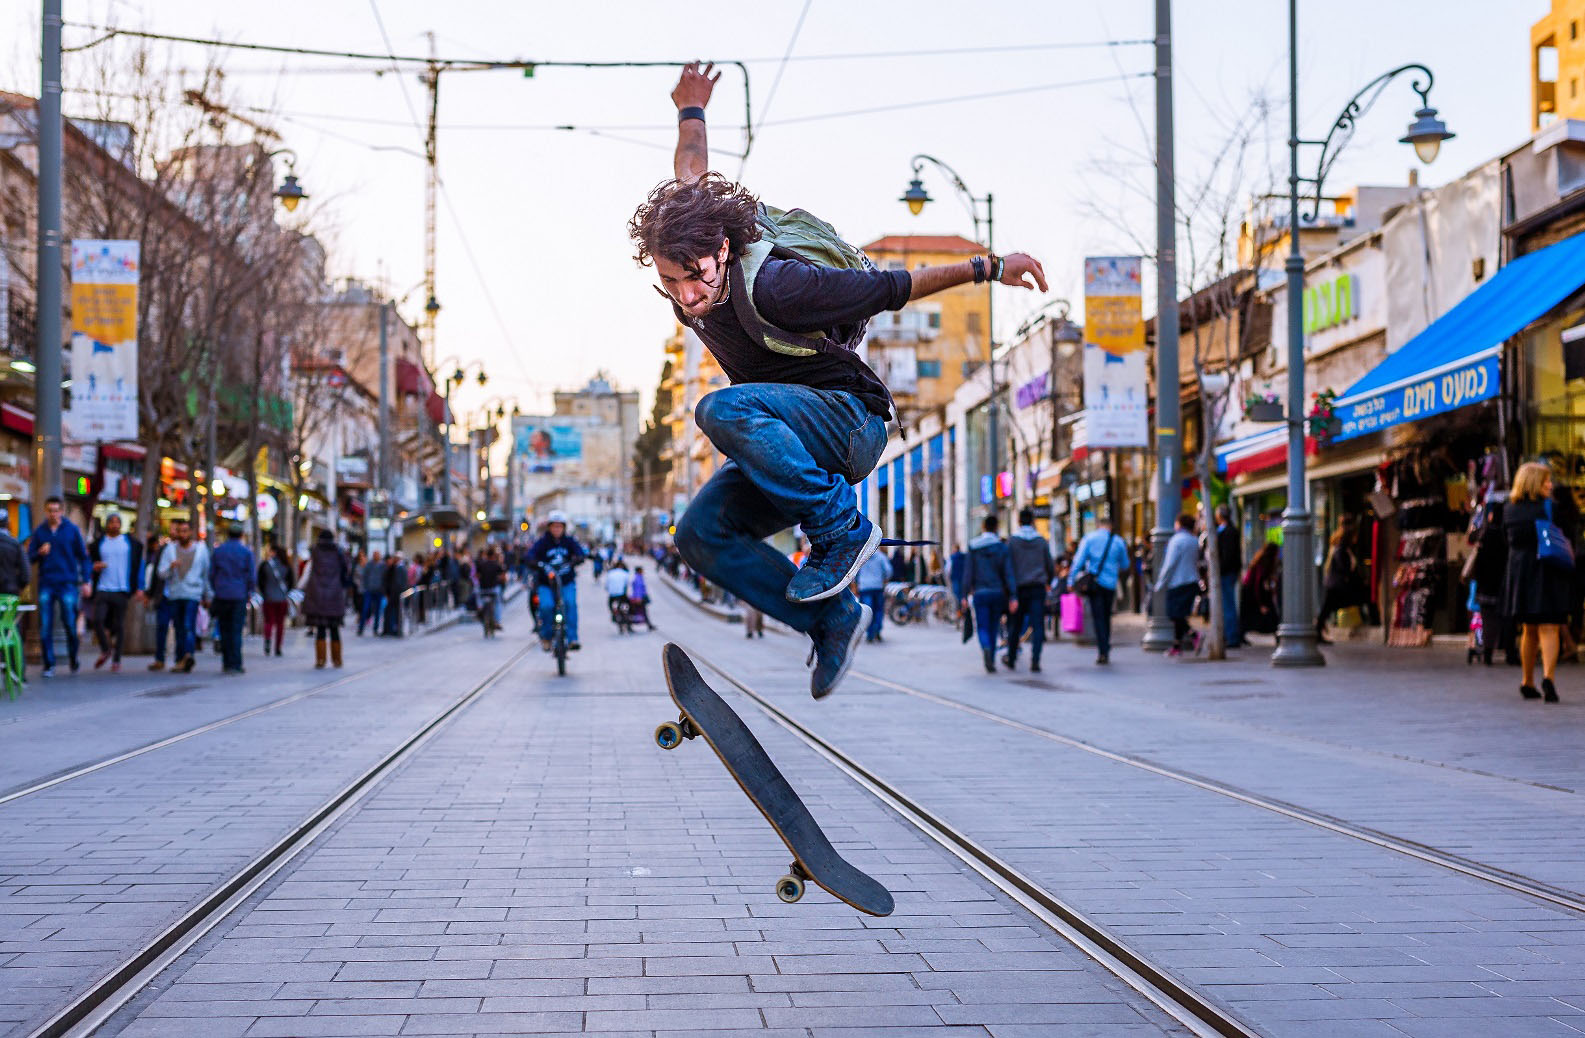 Kobi Bichachi trained his lens on a Jerusalem skateboarder for JerusaLENS.